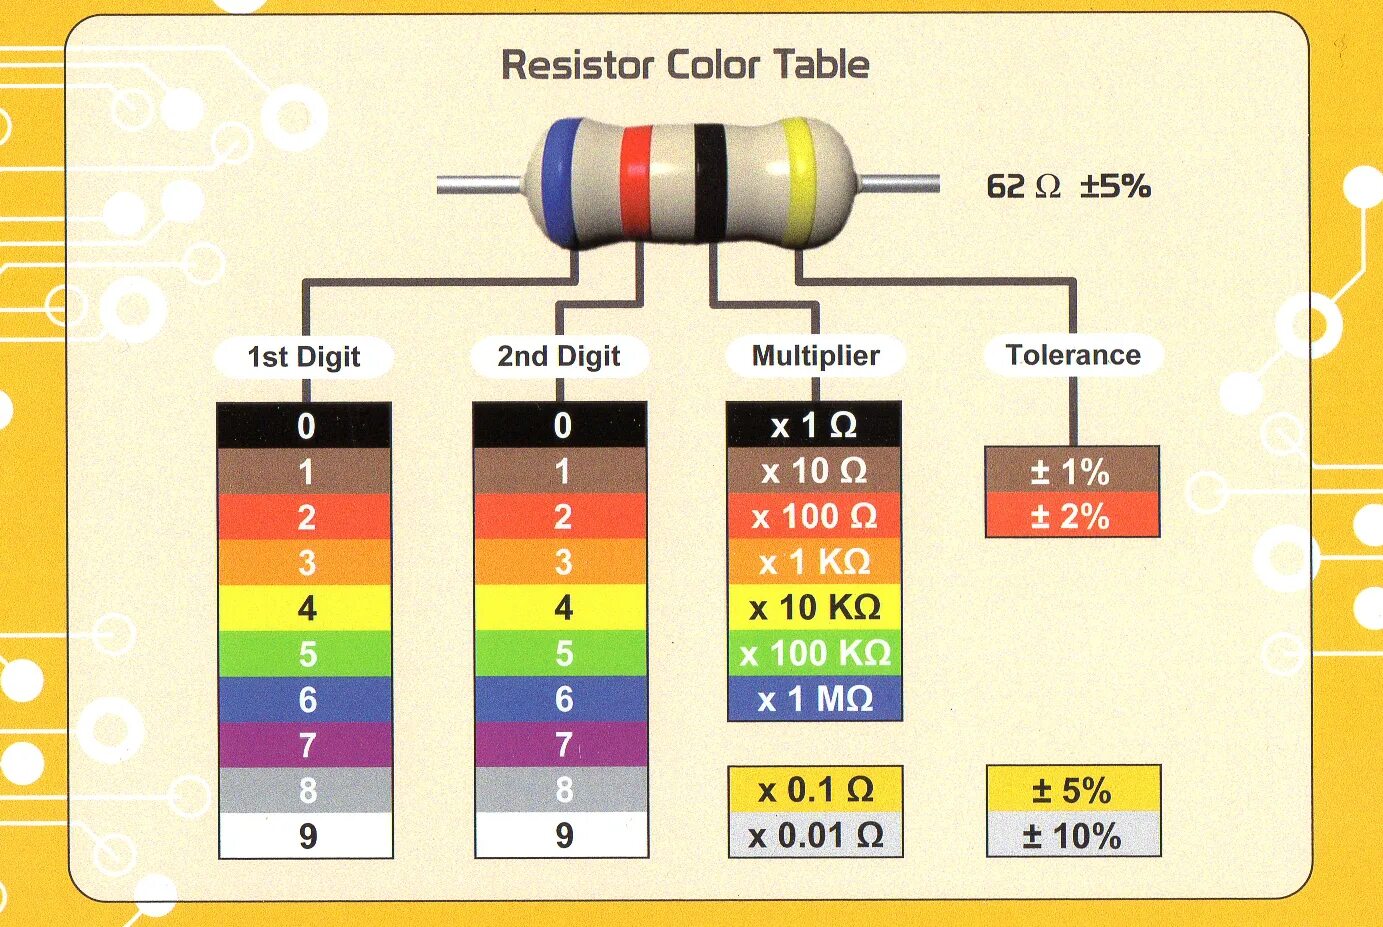 Физическое обозначение сопротивления. Цветовая маркировка резисторов 4 полосы. Цветовая маркировка резисторов 2 полосы. Цветовая маркировка резисторов 5 полос. Резистор 0.22 Ома цветовая маркировка.